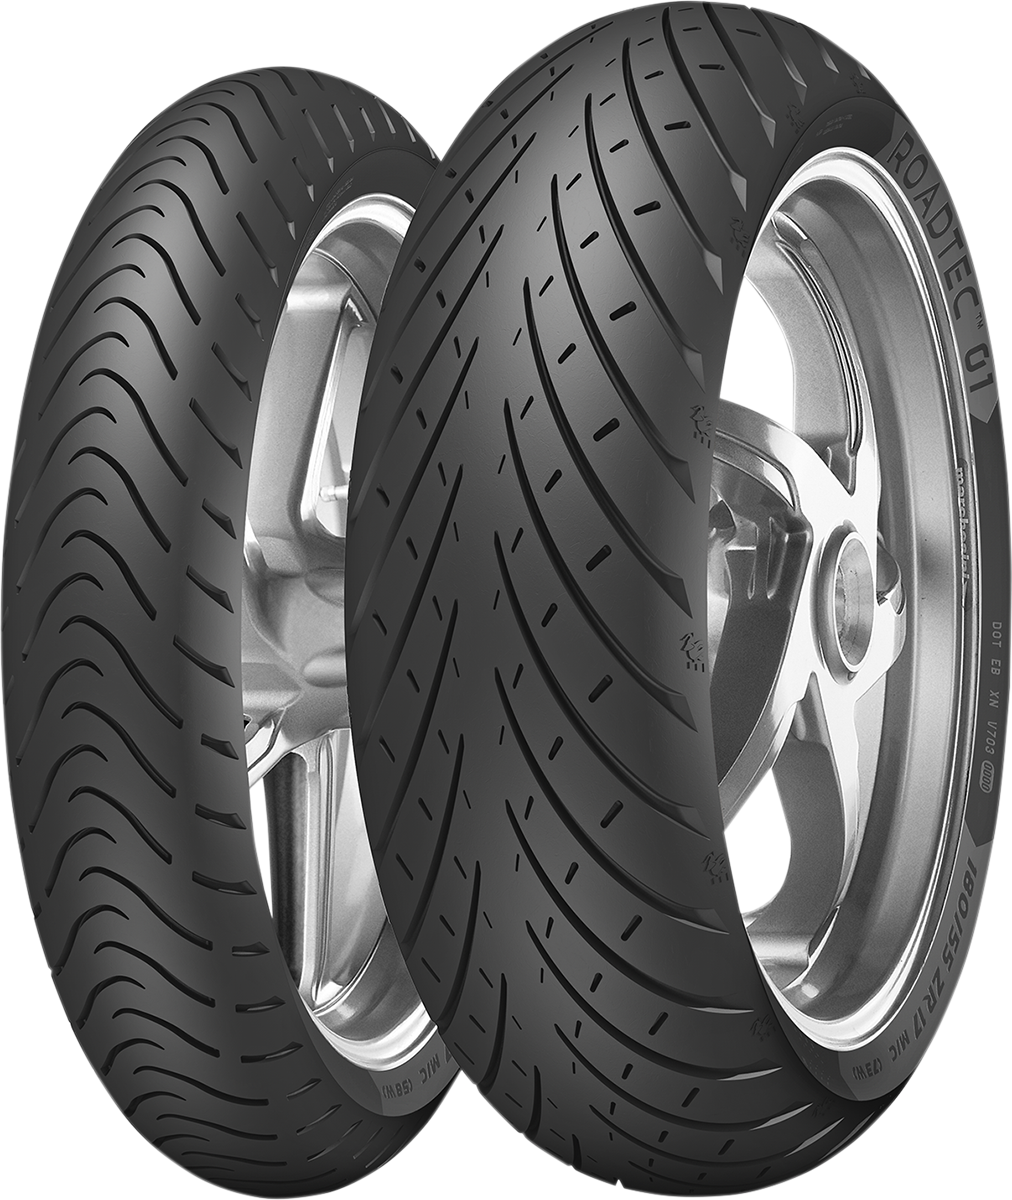 METZELER Tire - Roadtec* 01 - Front - 80/100-18 - 47P 3775900